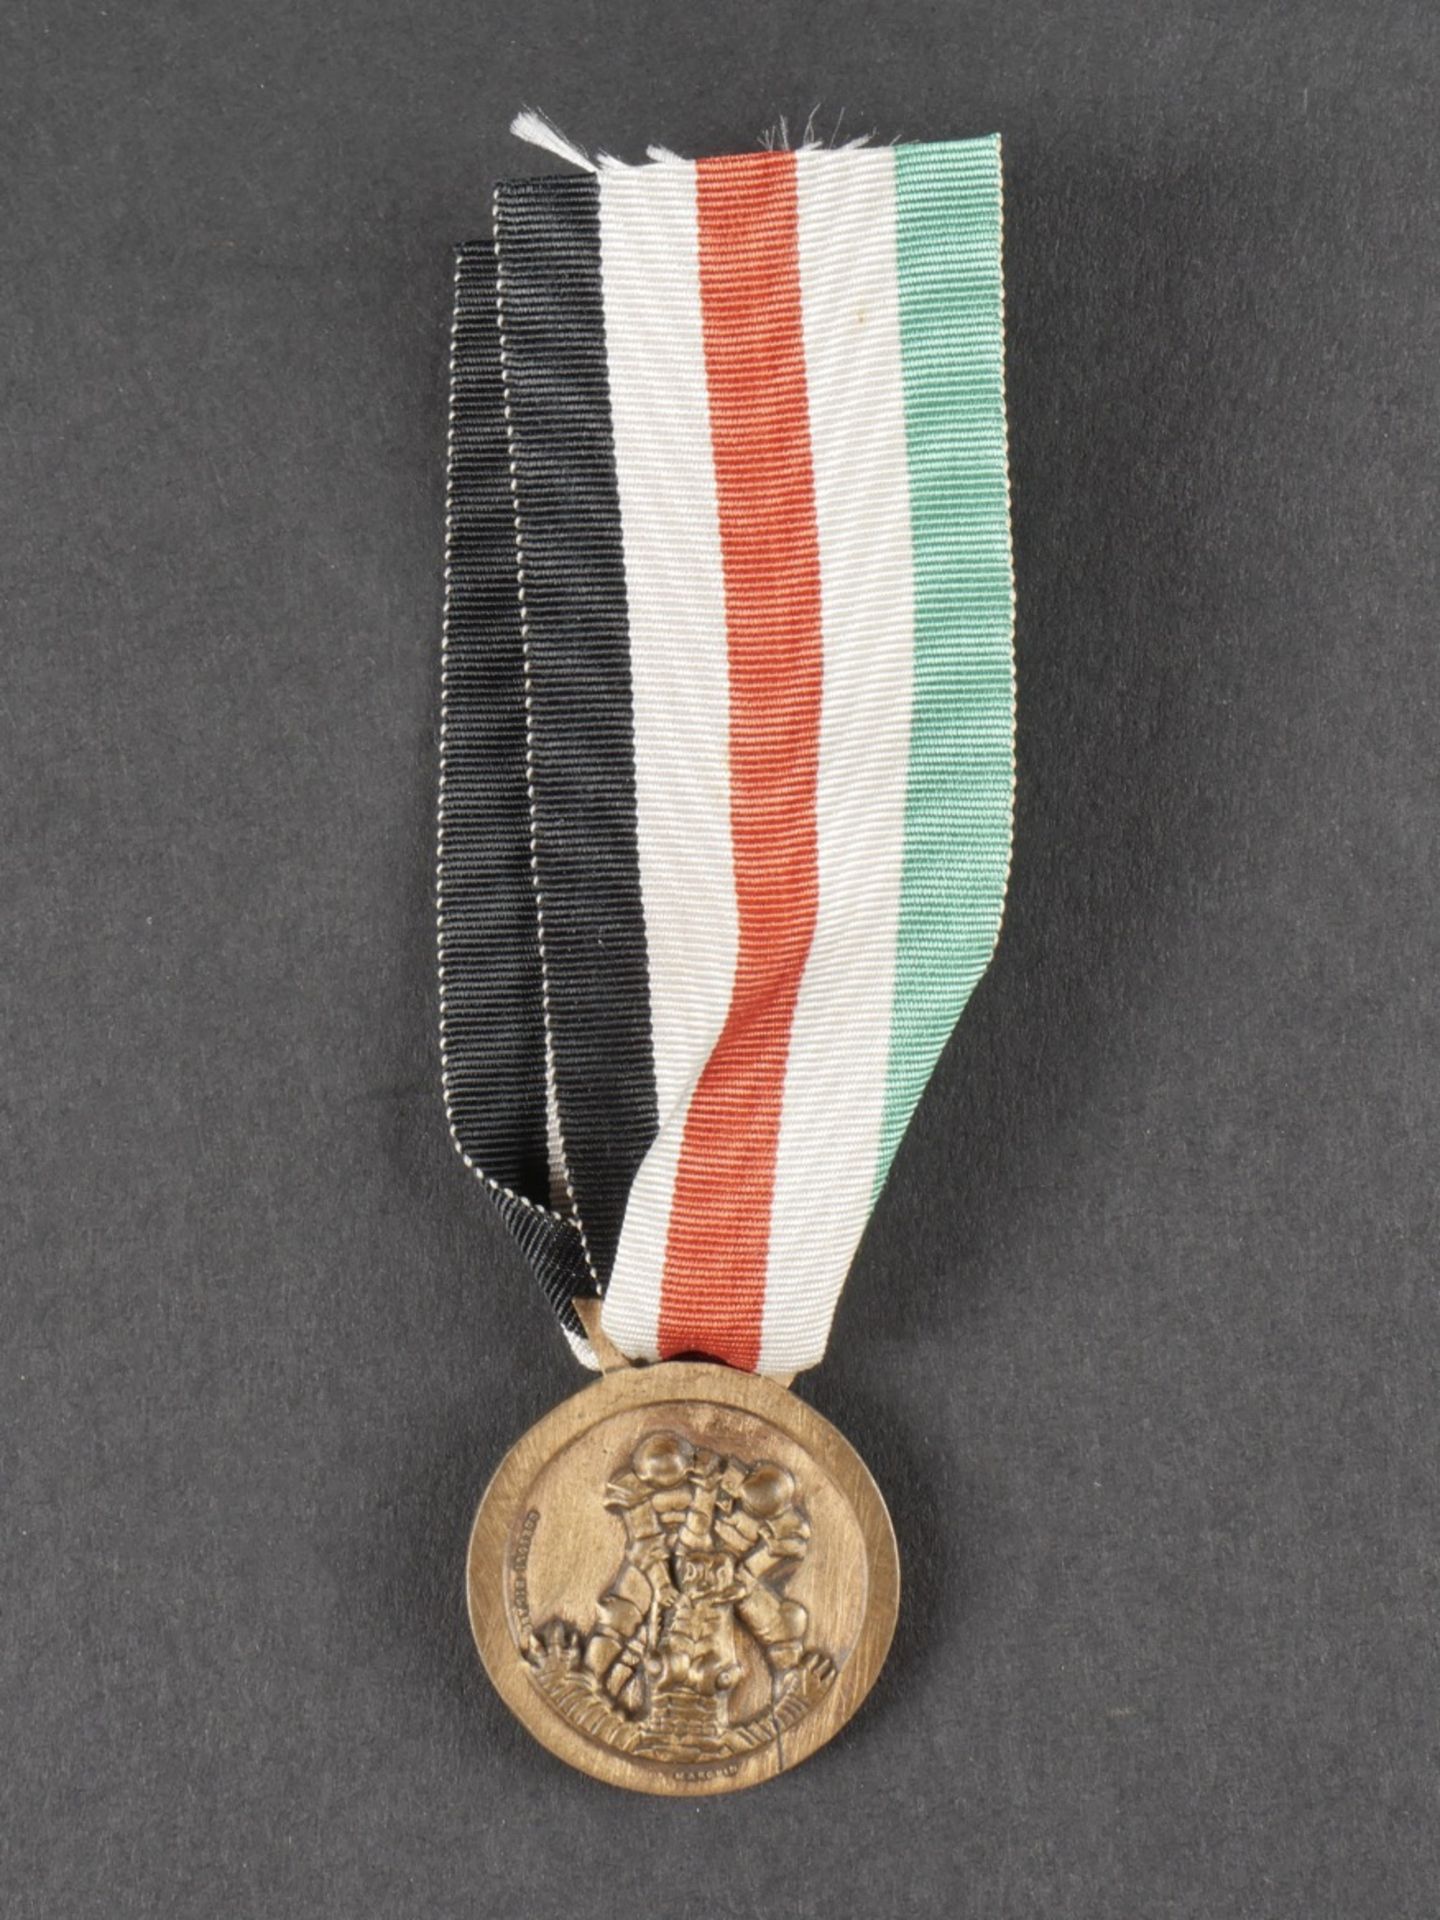 Medaille de la campagne italo-allemande en Afrique. Medal for the Italo-German campaign in Africa.